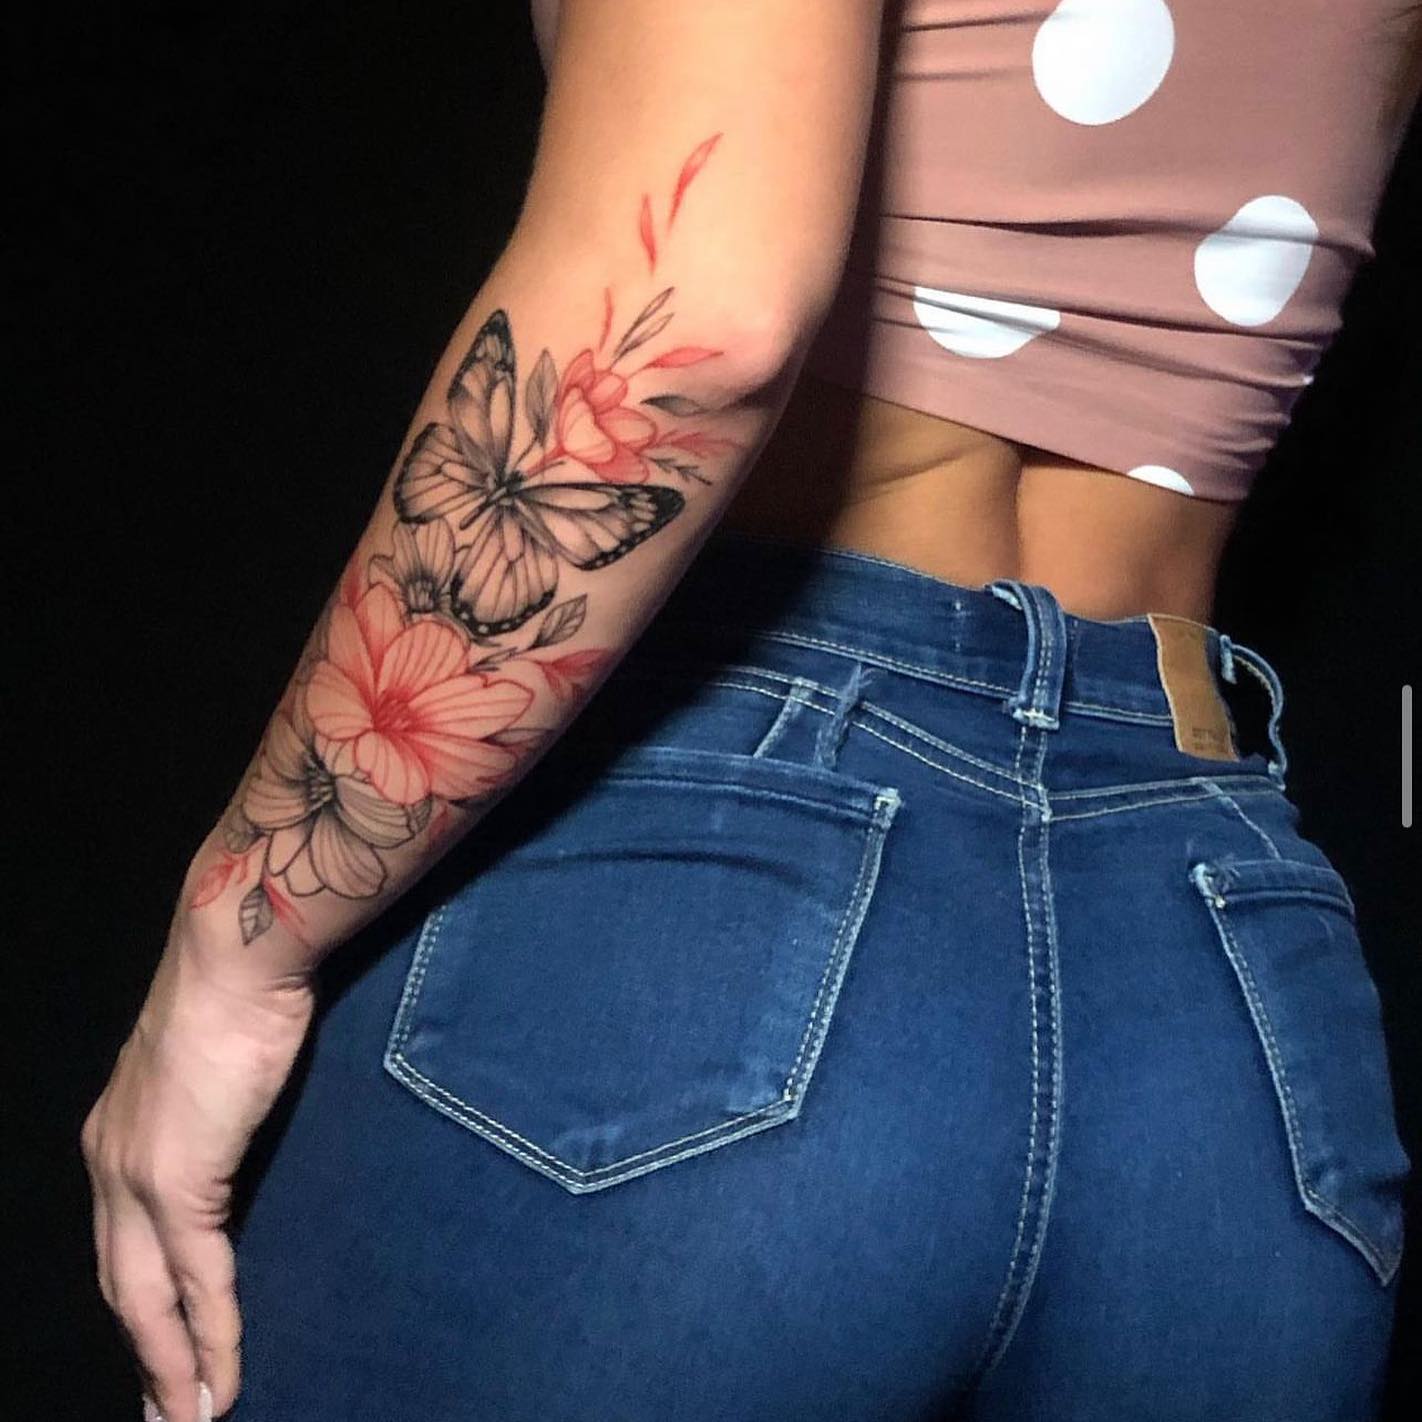 Cute Tattoo Ideas, Sexy Tattoo Ideas For Women, Minimalist Tattoo